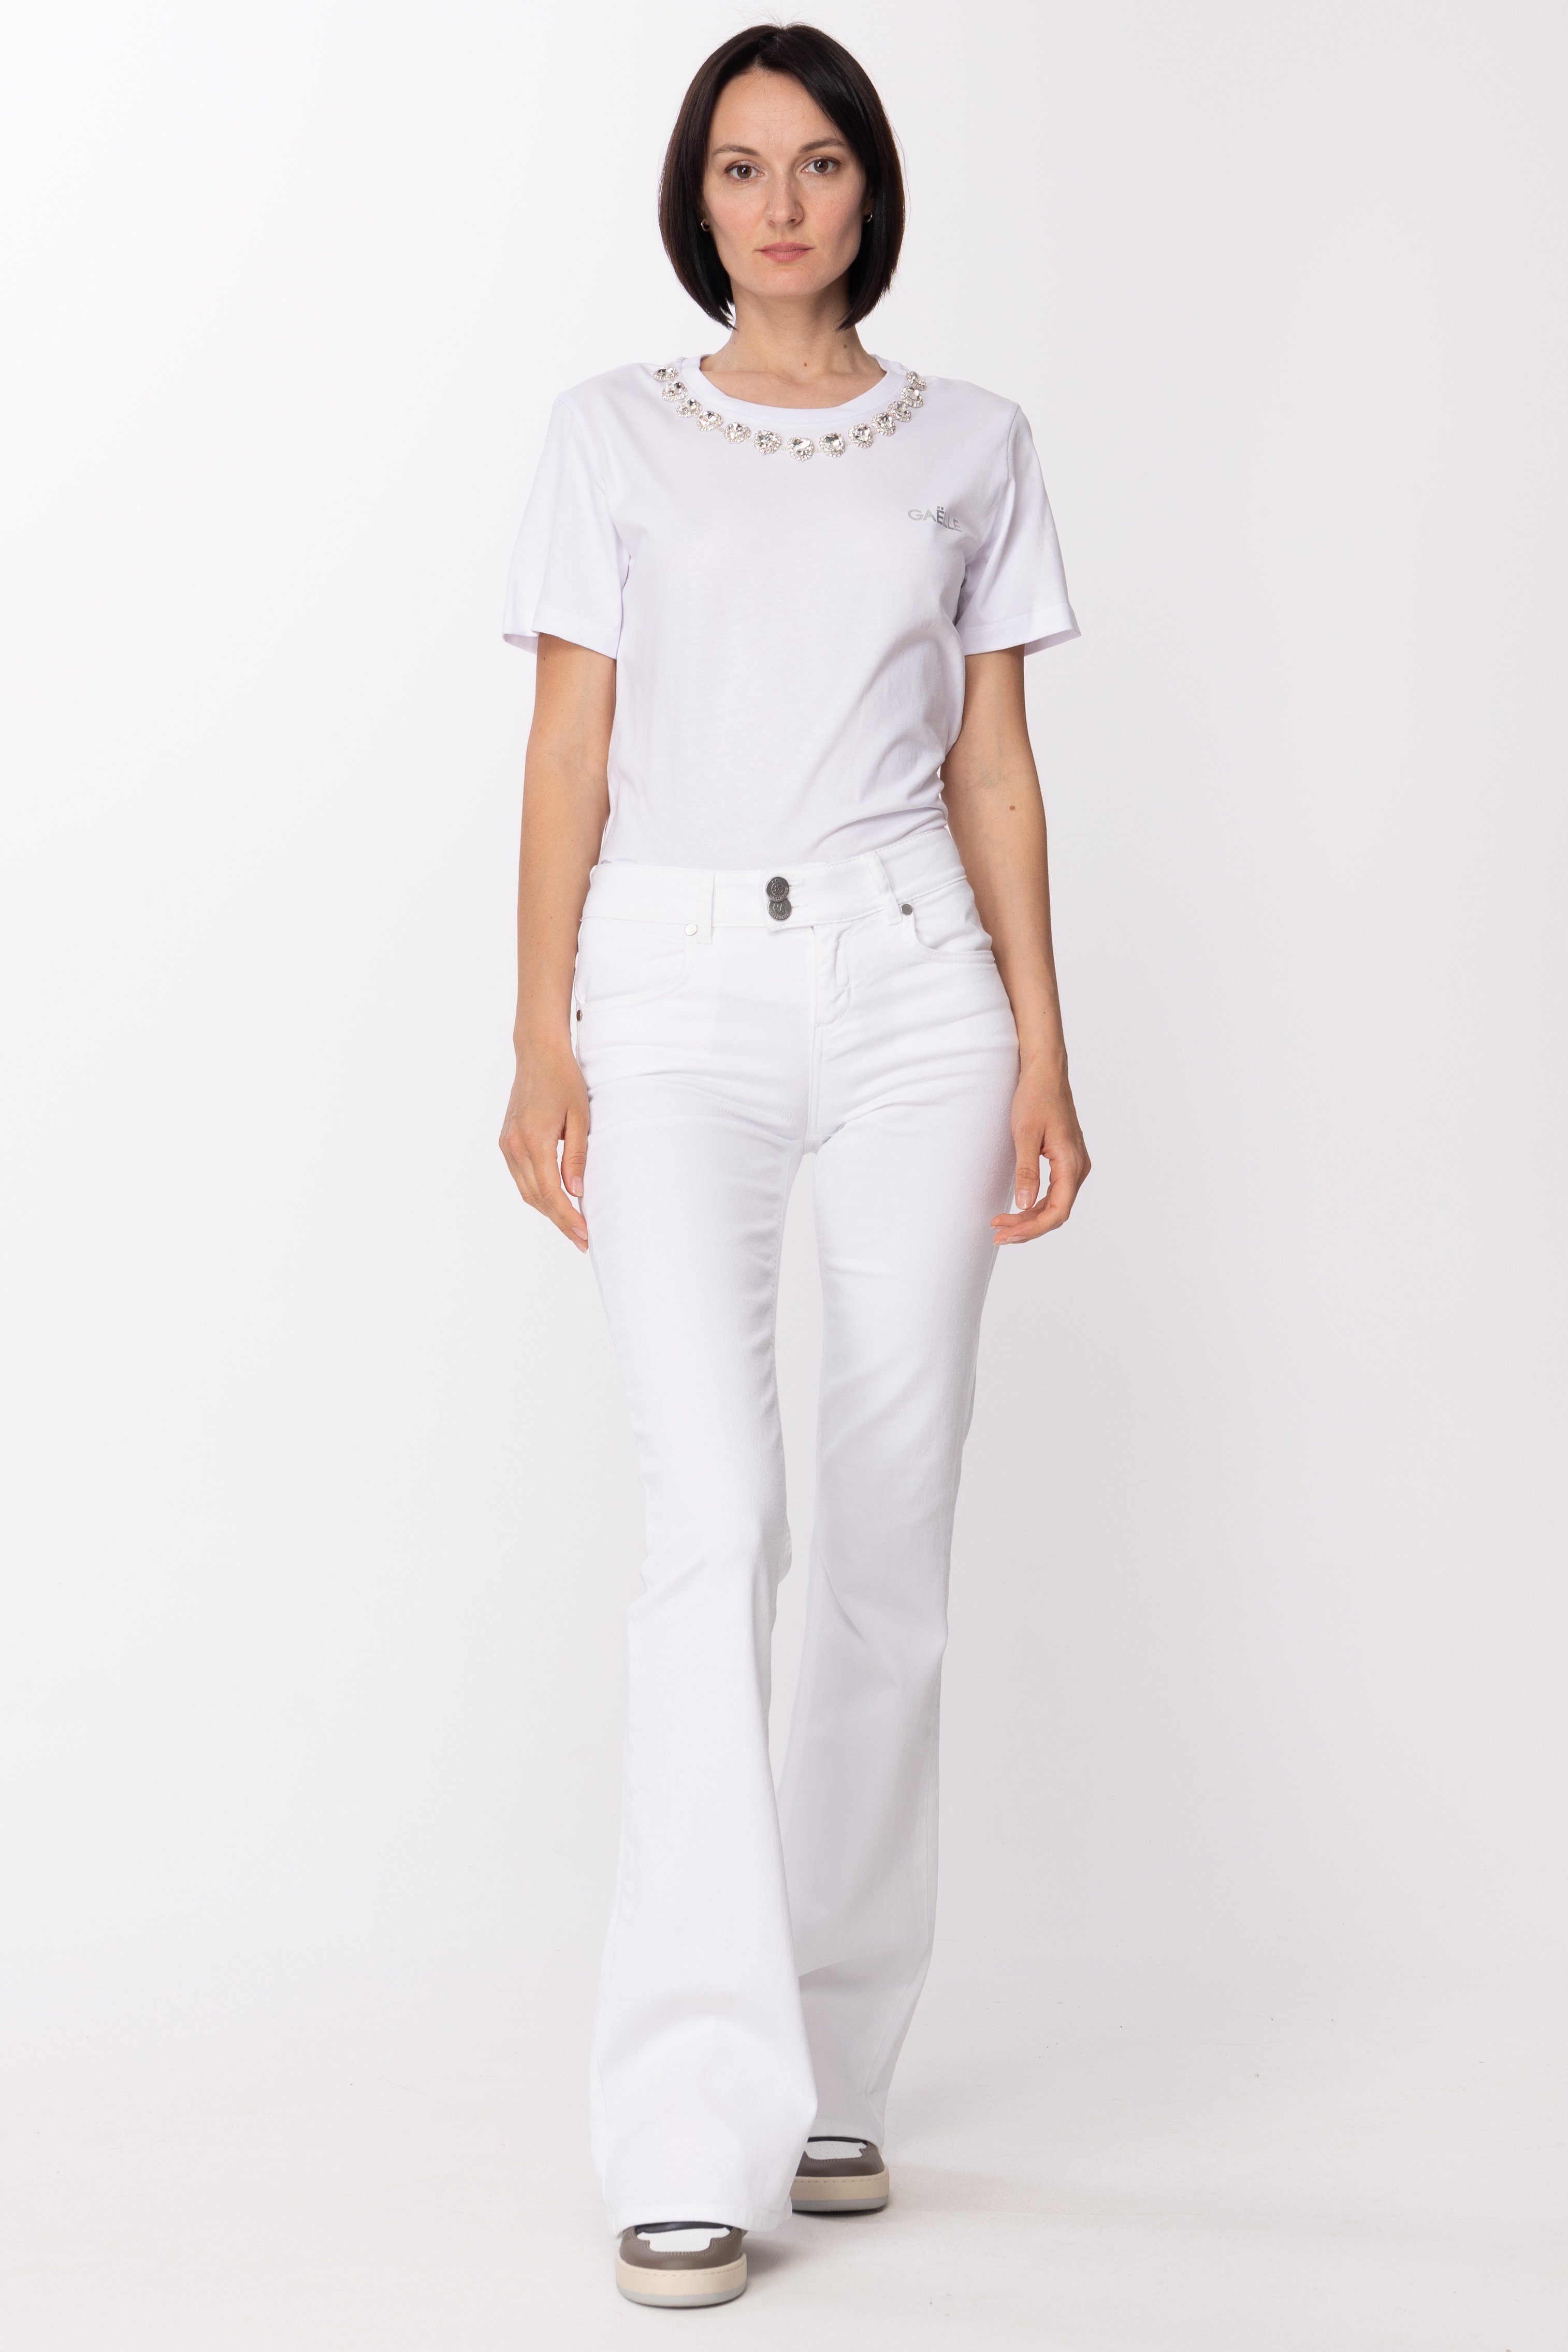 Vorschau: Gaelle Paris T-Shirt mit Strassherzen Bianco